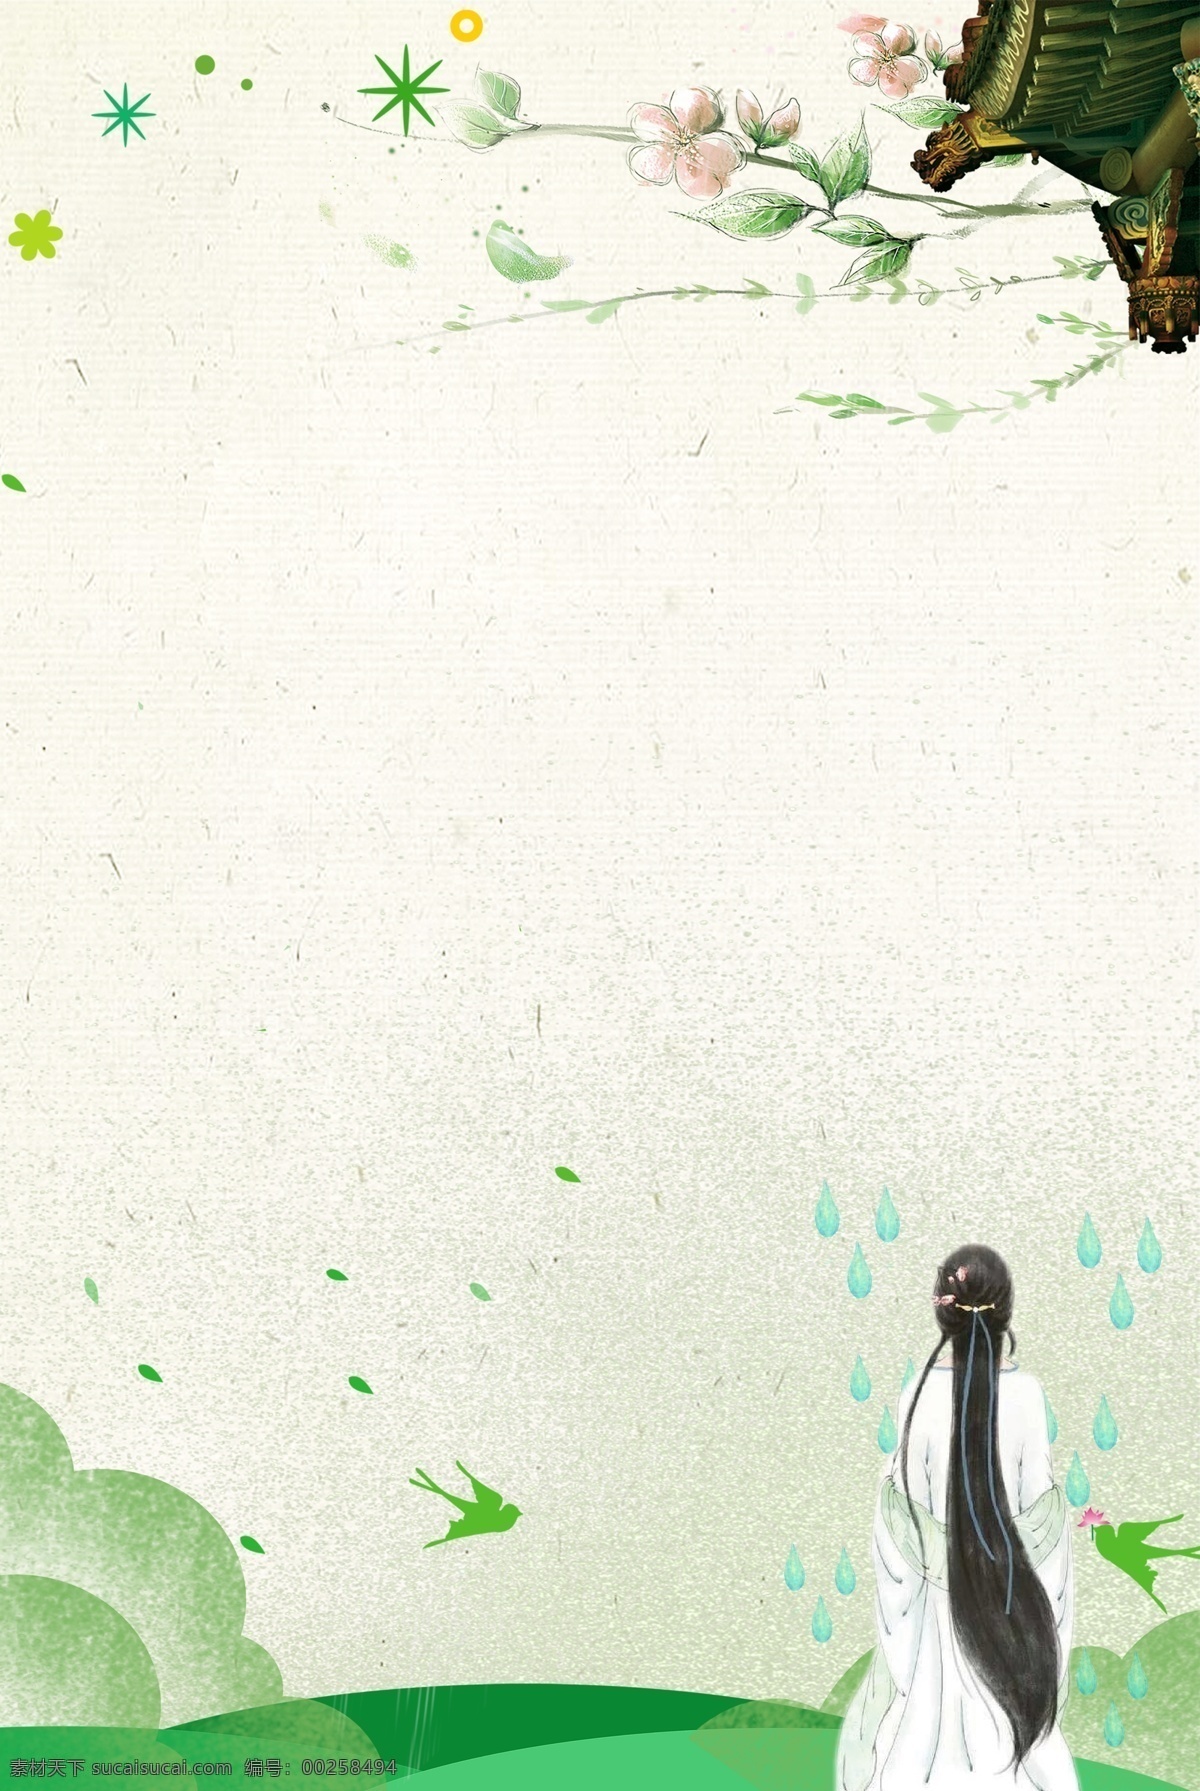 雨水 下雨 传统节日 二十四节气 水 屋檐 背影 燕子 插画风 小清新 简约 水塘 雨伞